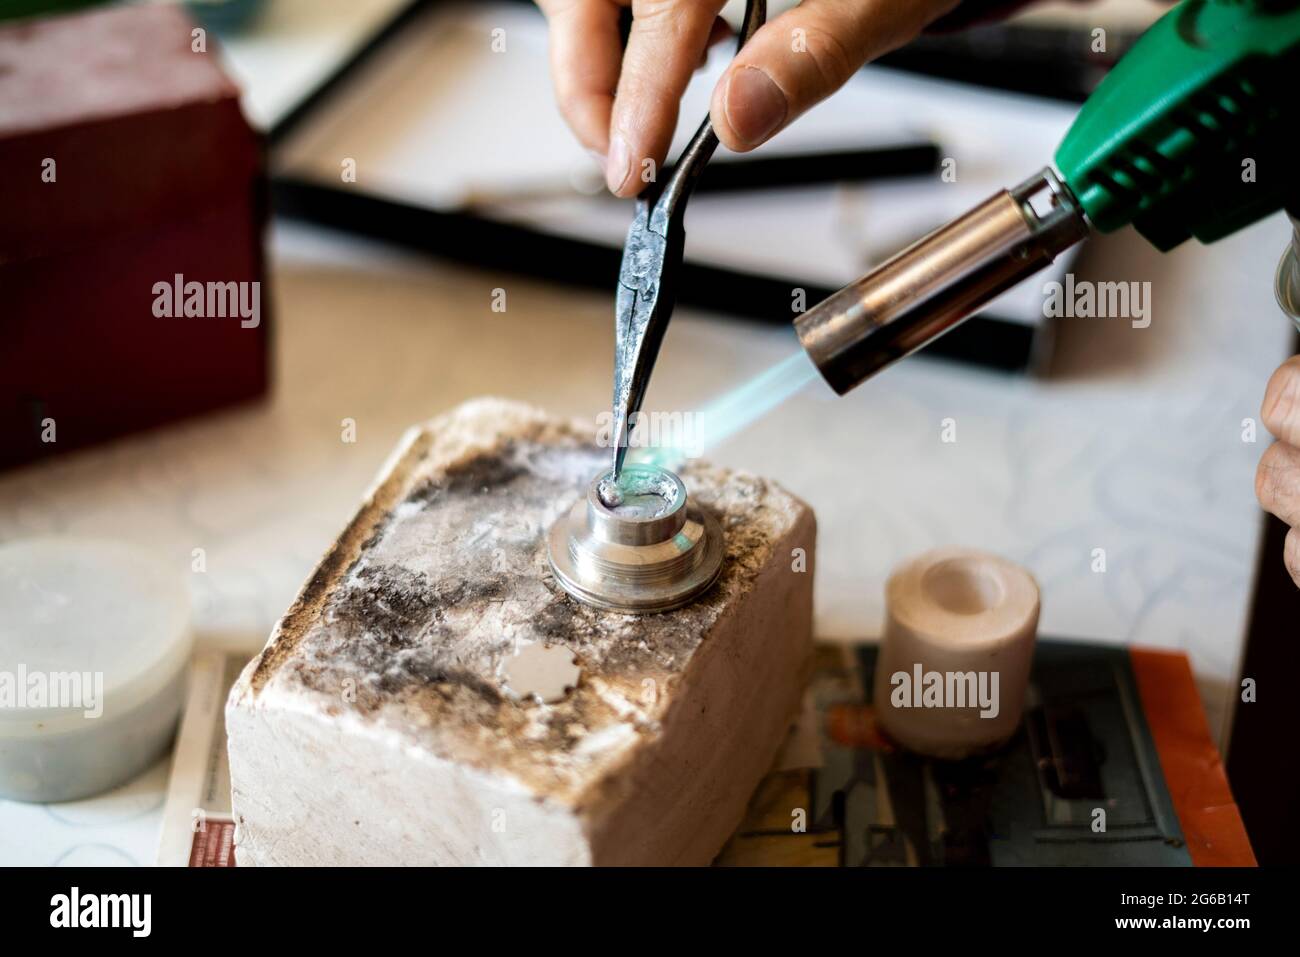 Die Hände eines Arbeiters benutzen einen Gasbrenner in einer Werkstatt Stockfoto